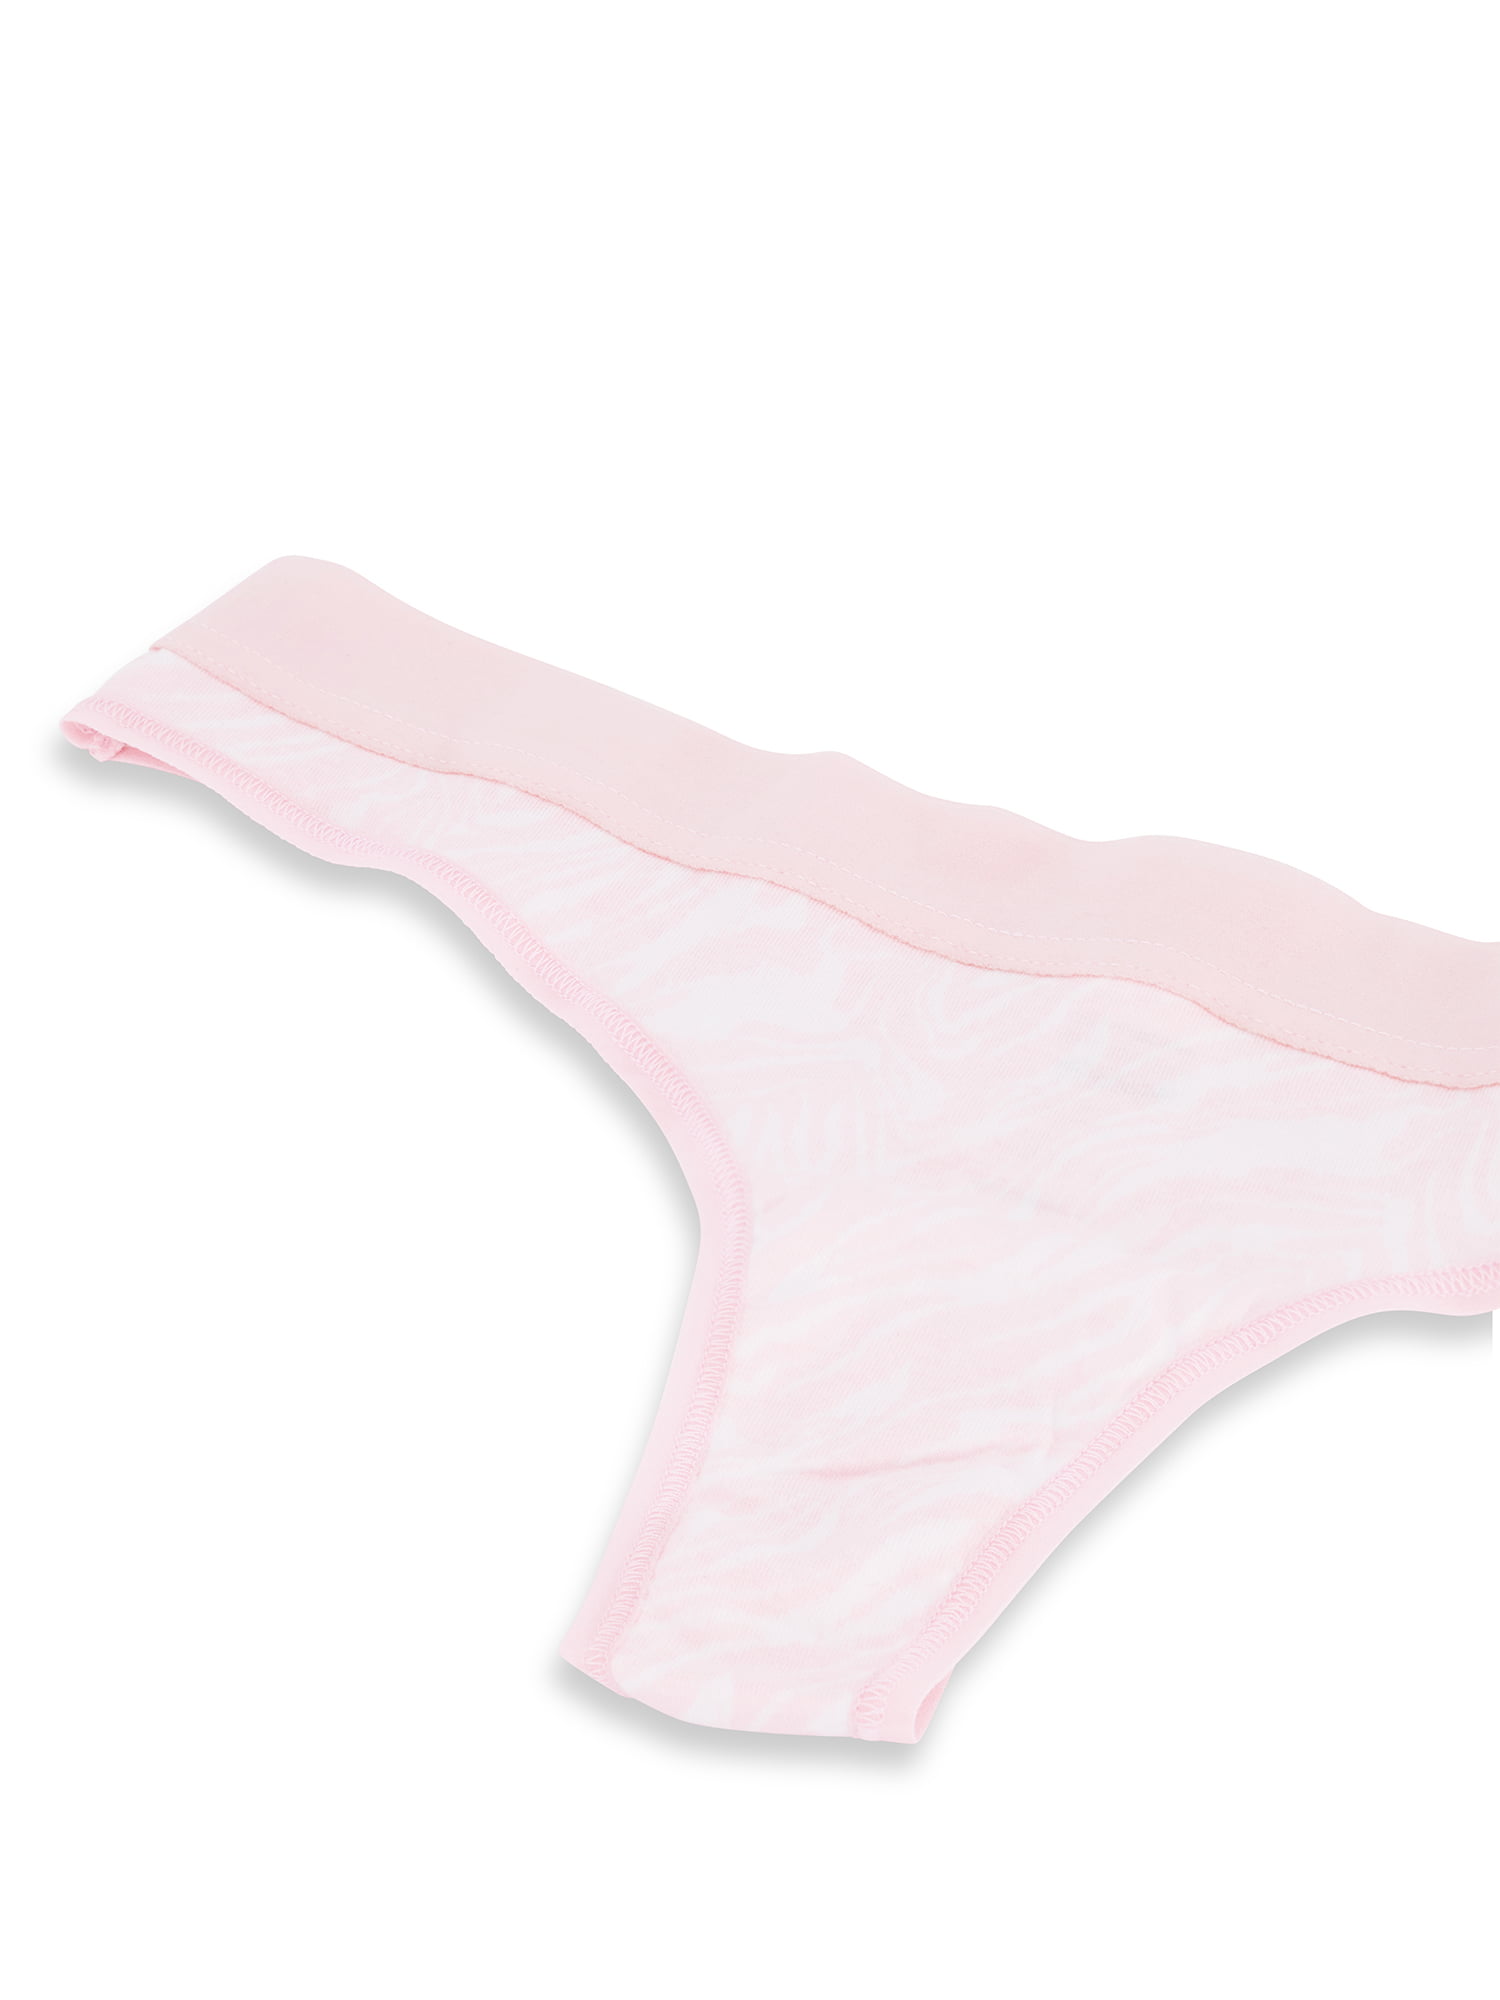 Buy Cotton Thong Panty - Order Panties online 5000006732 - PINK US